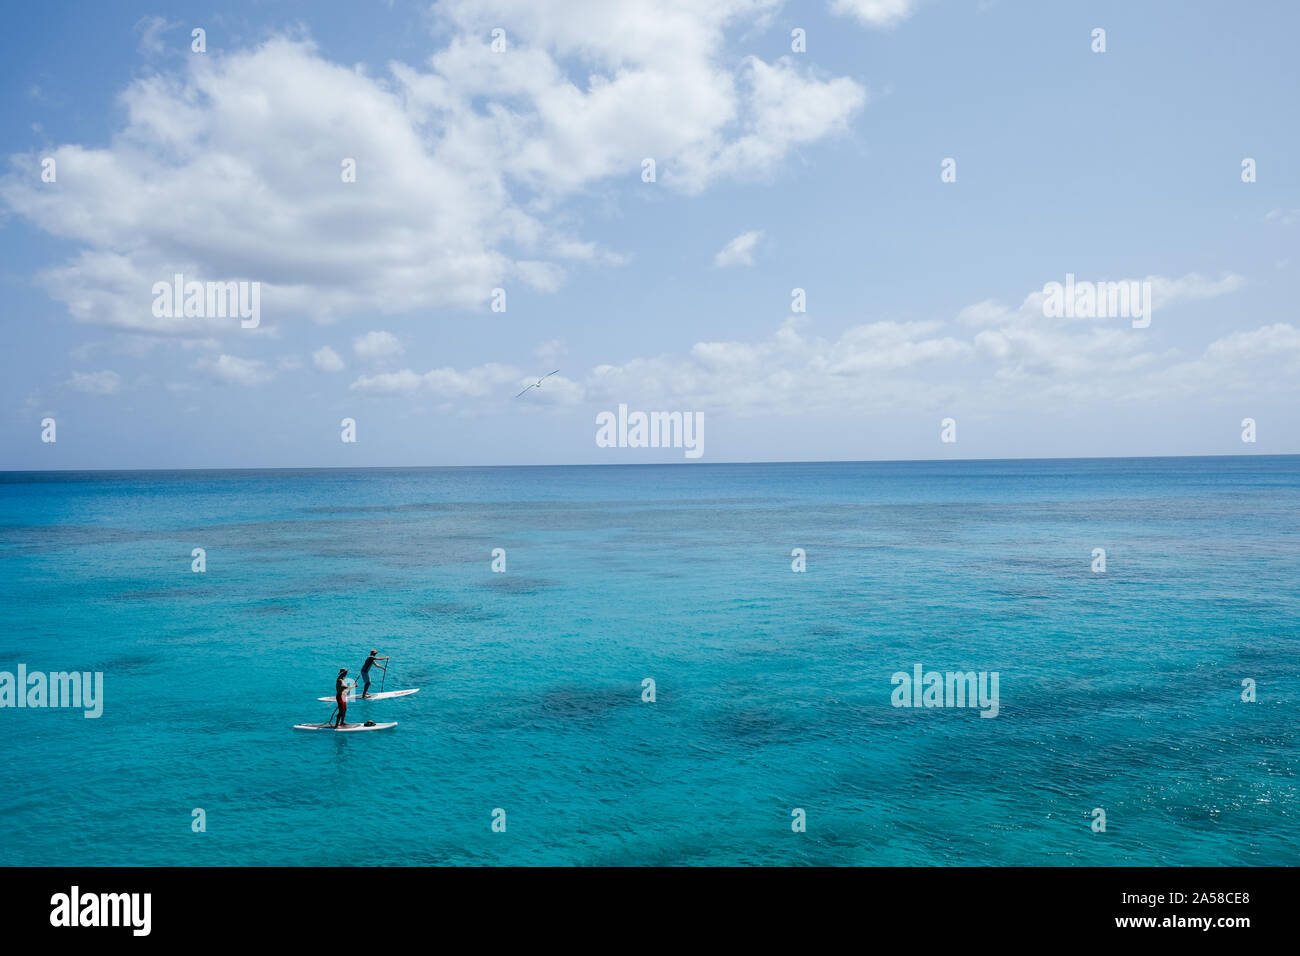 Paddle boarding near Church Bay, Bermuda. Stock Photo